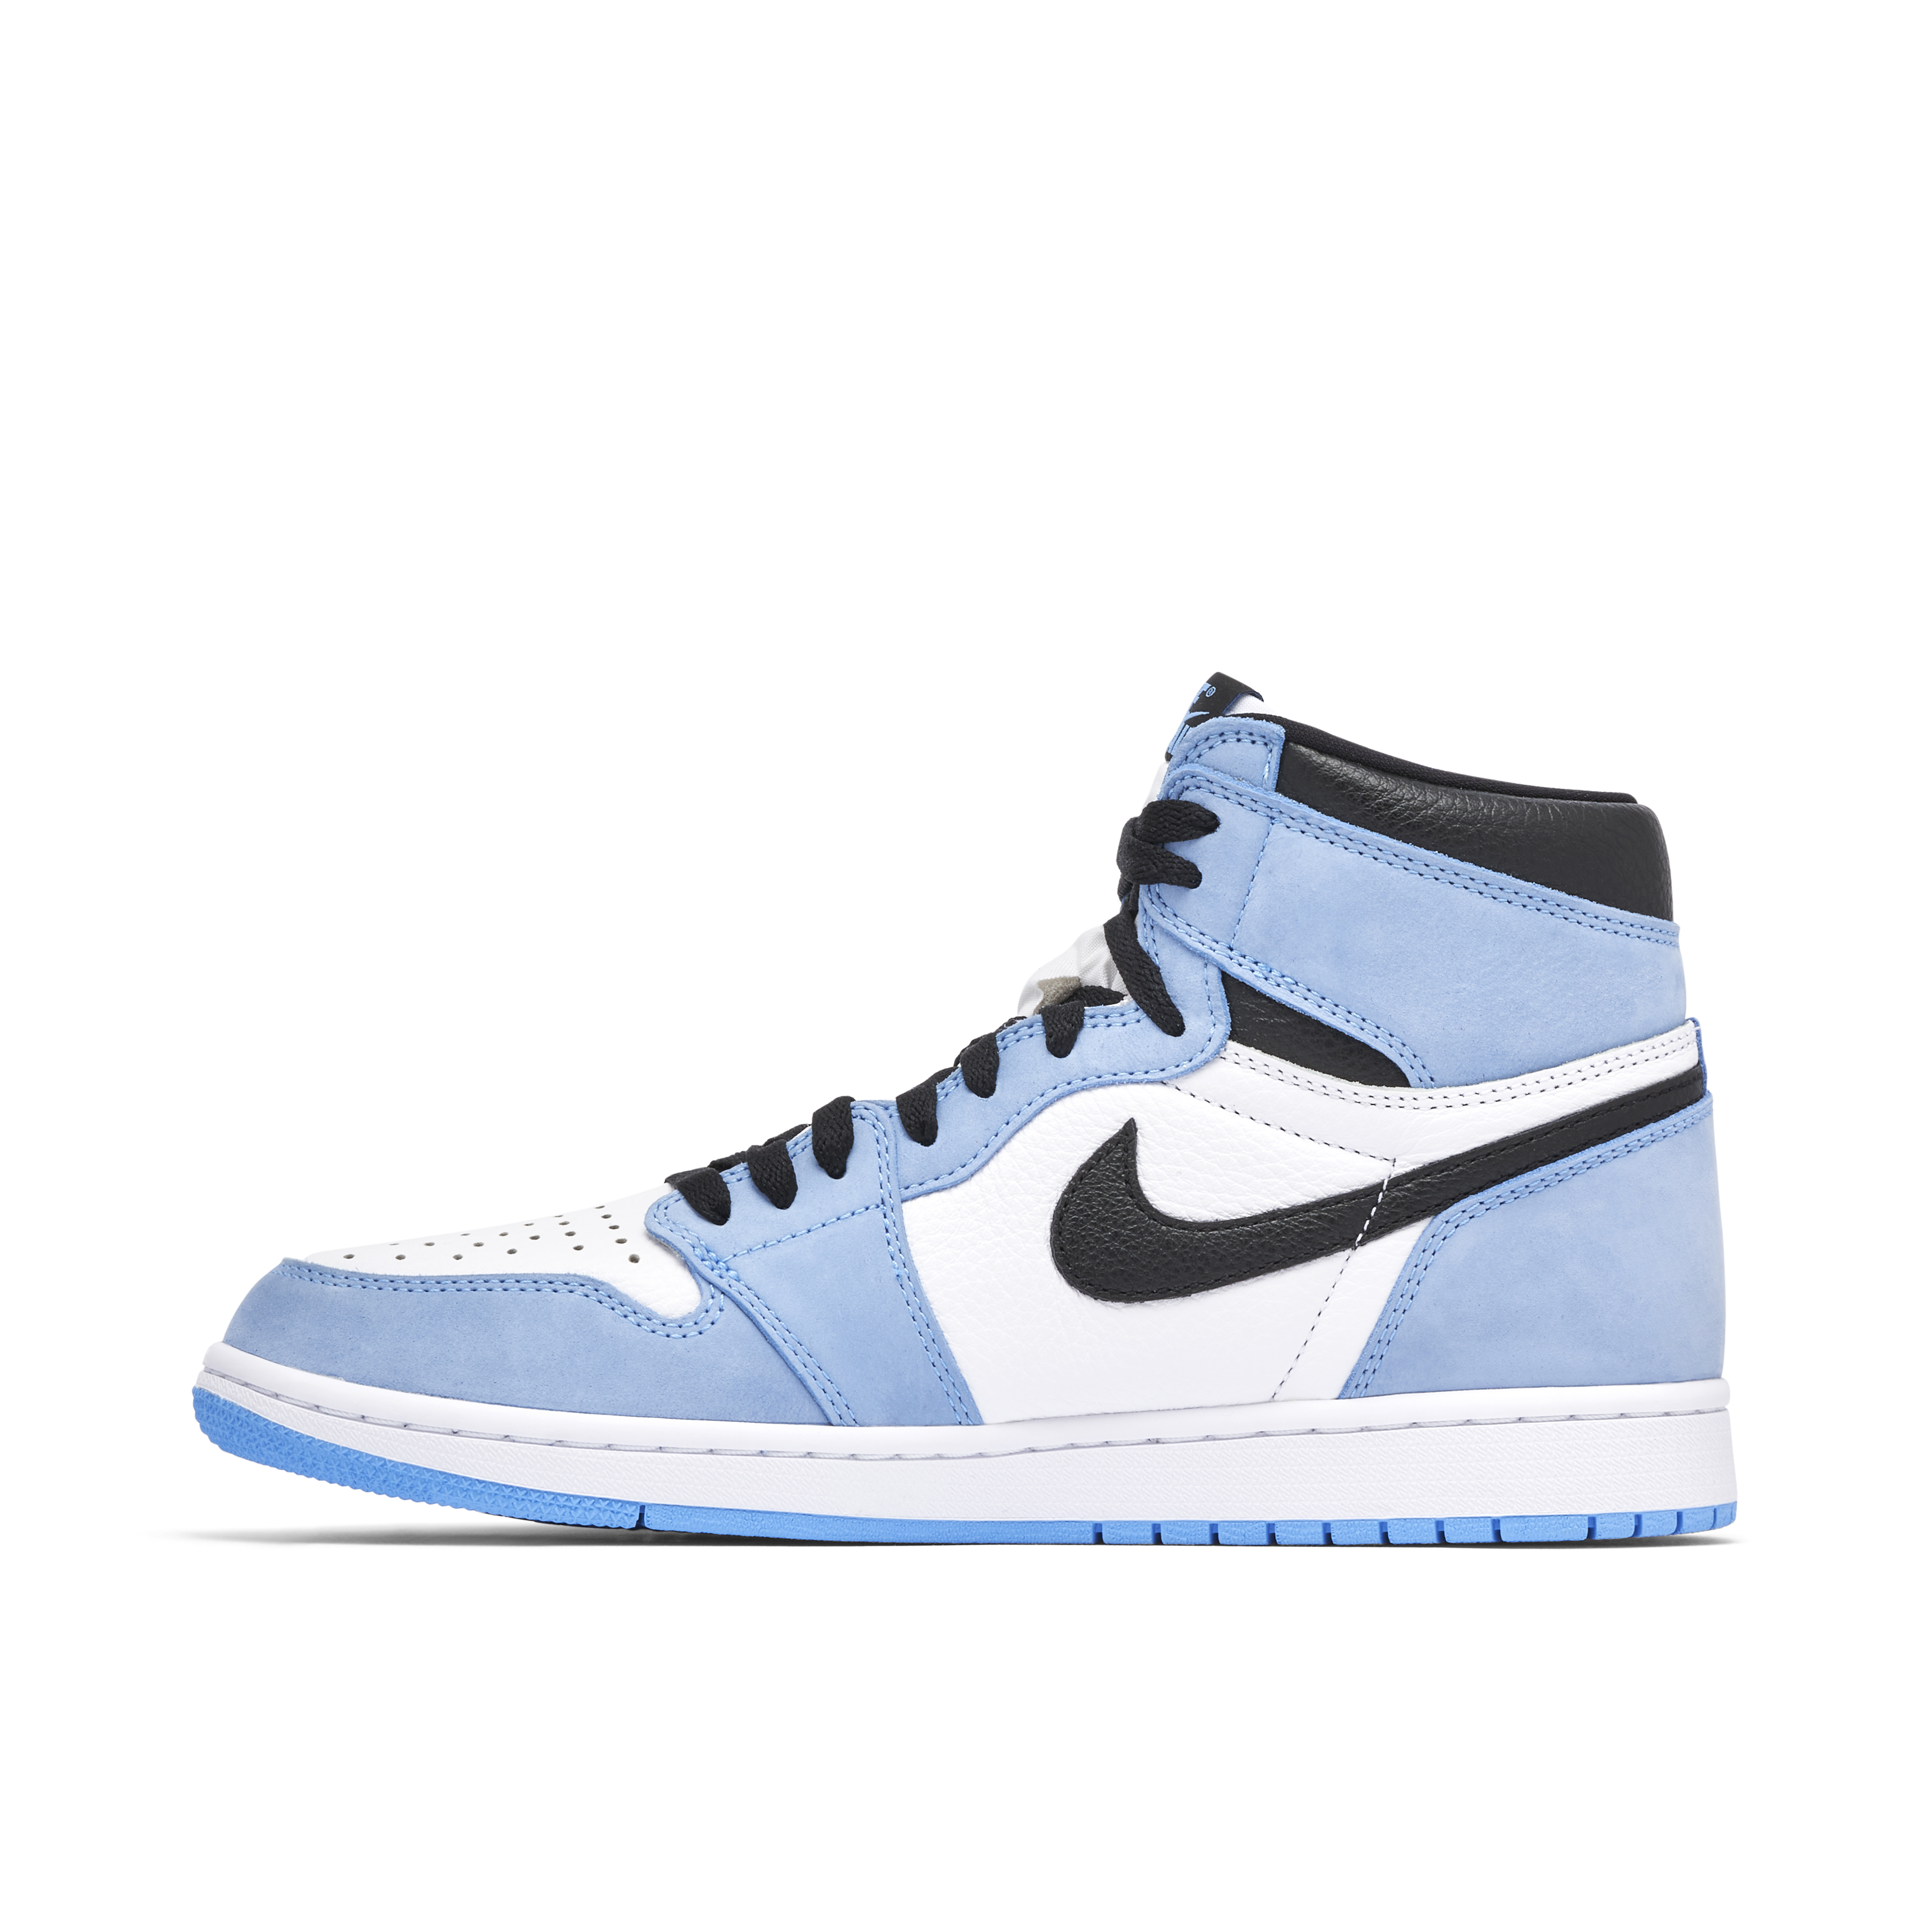 Jordan 1 Retro High OG 'UNC Toe' Black or UNC Blue laces…??? : r/Sneakers